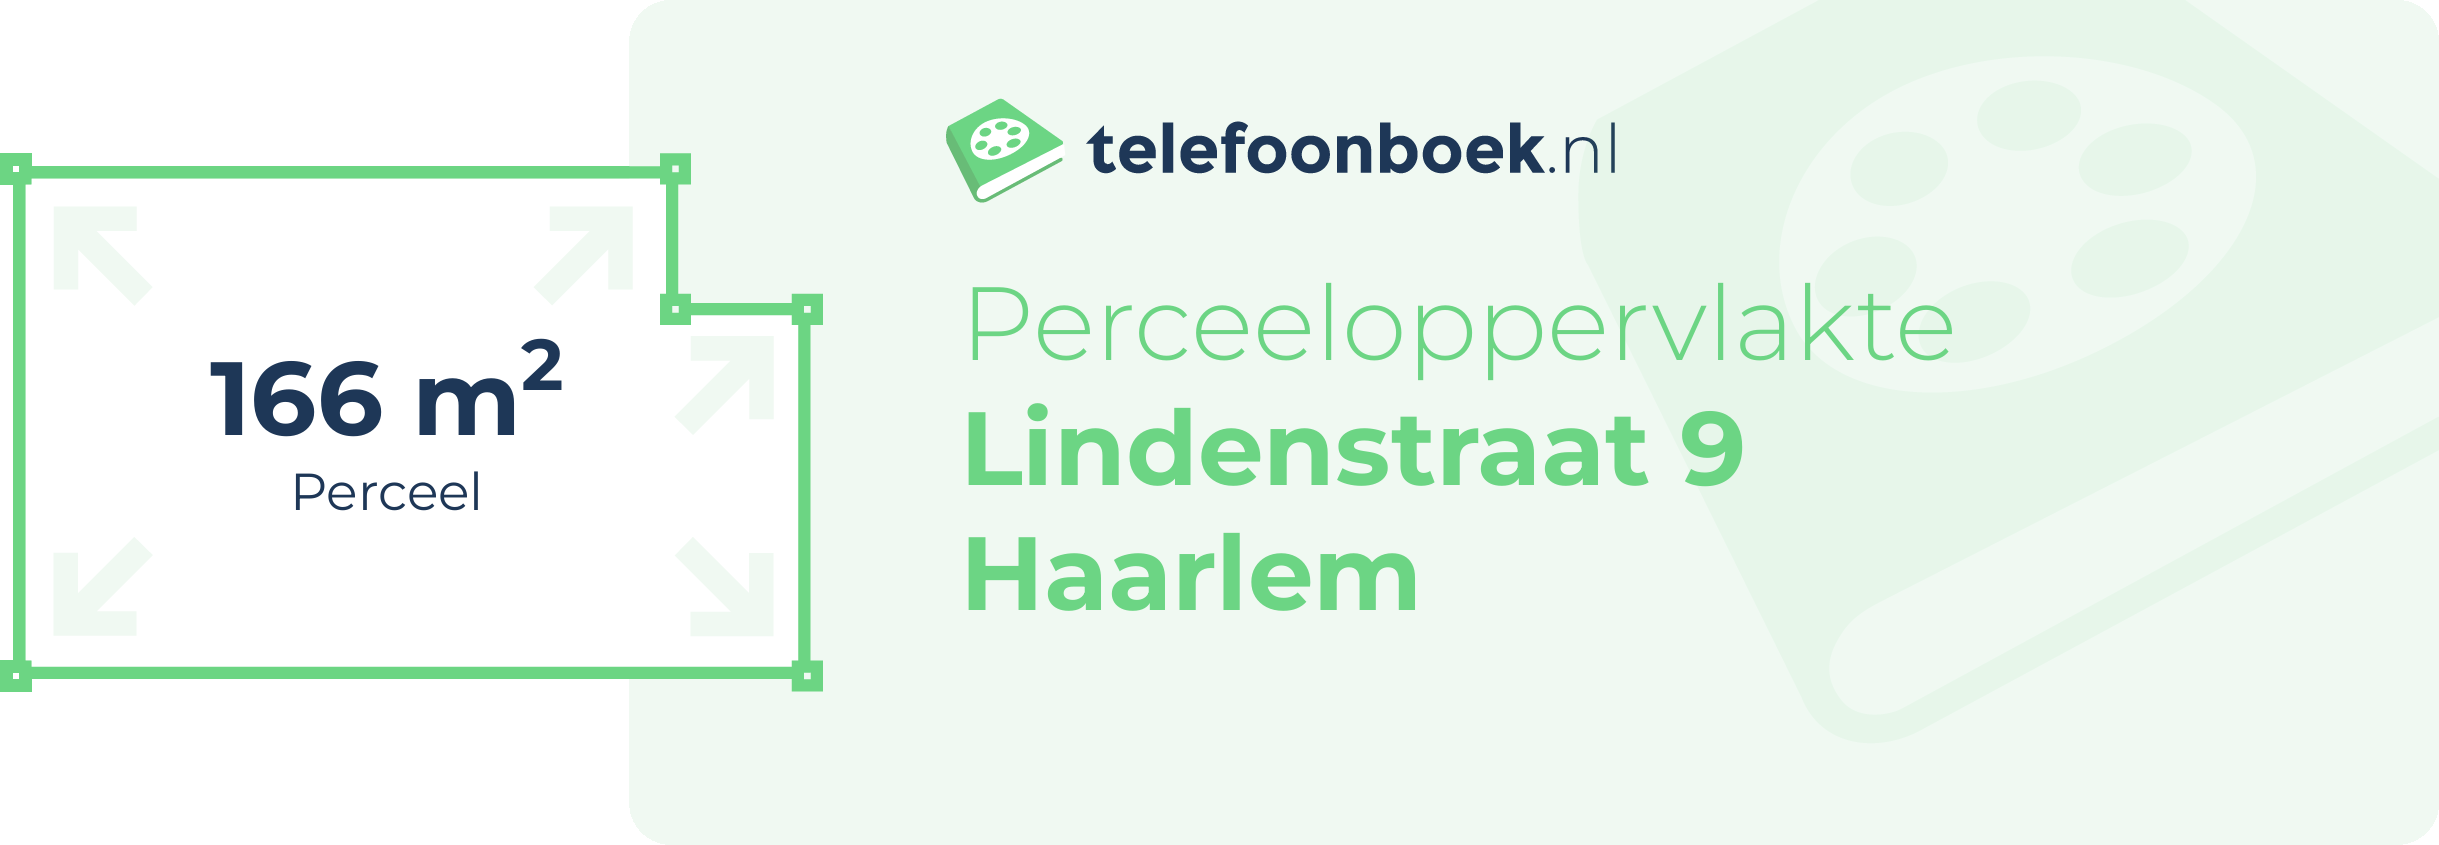 Perceeloppervlakte Lindenstraat 9 Haarlem